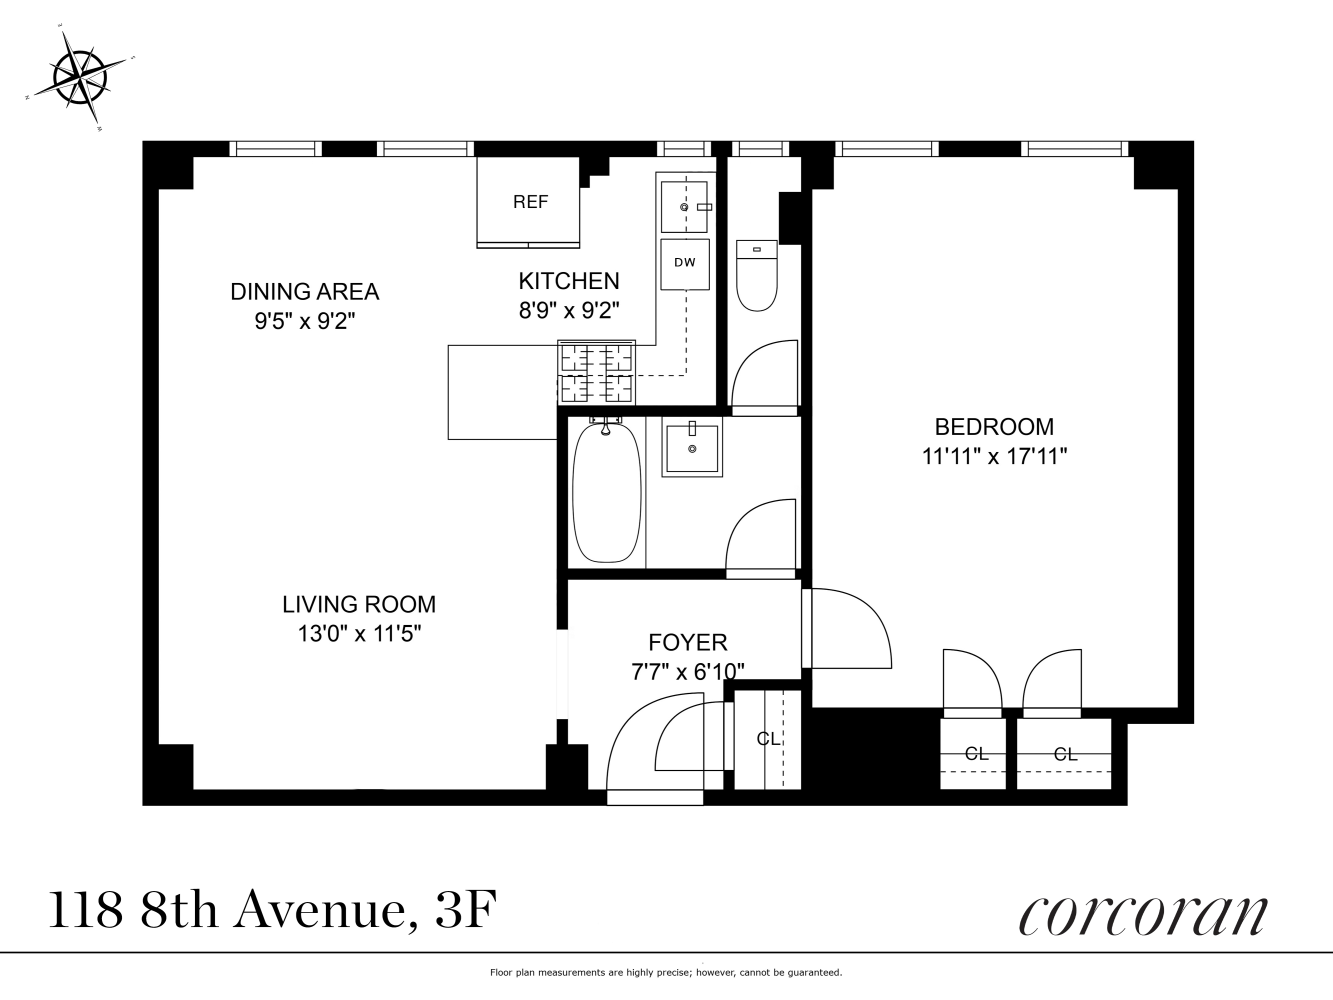 Floorplan for 118 8th Avenue, 3F